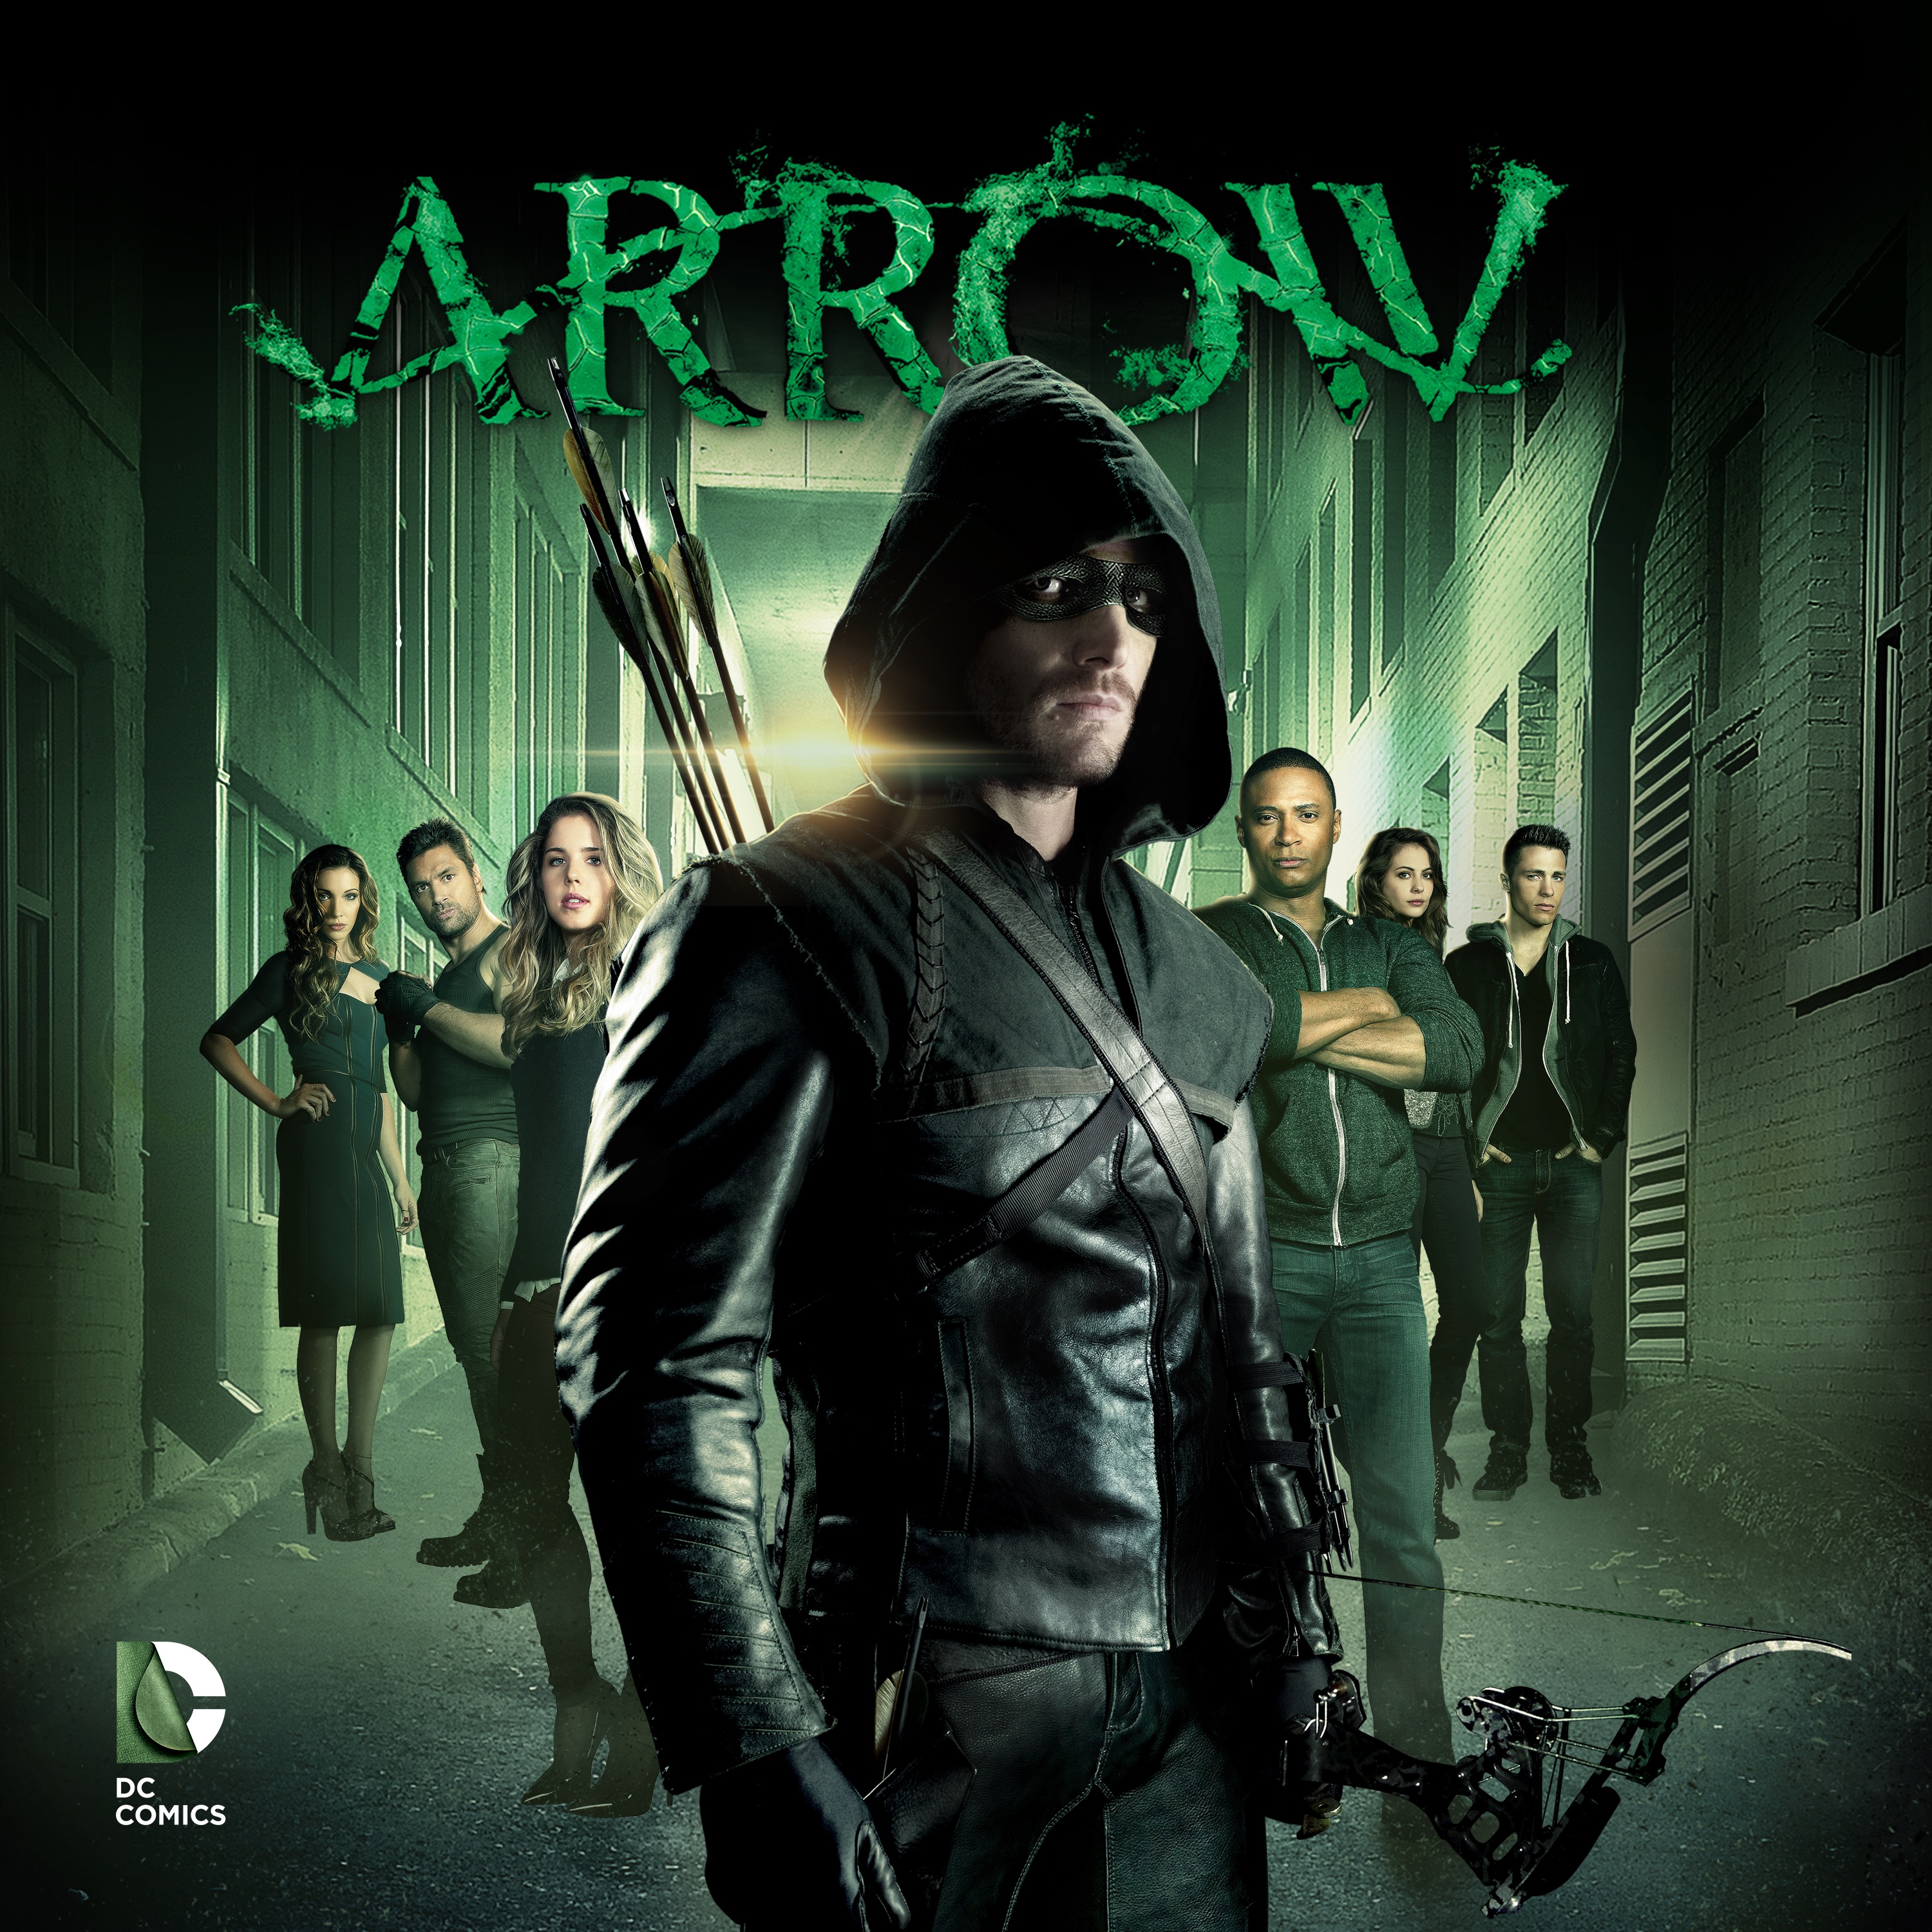 Amazoncom: Arrow: Season 1: Stephen Amell, Katie Cassidy